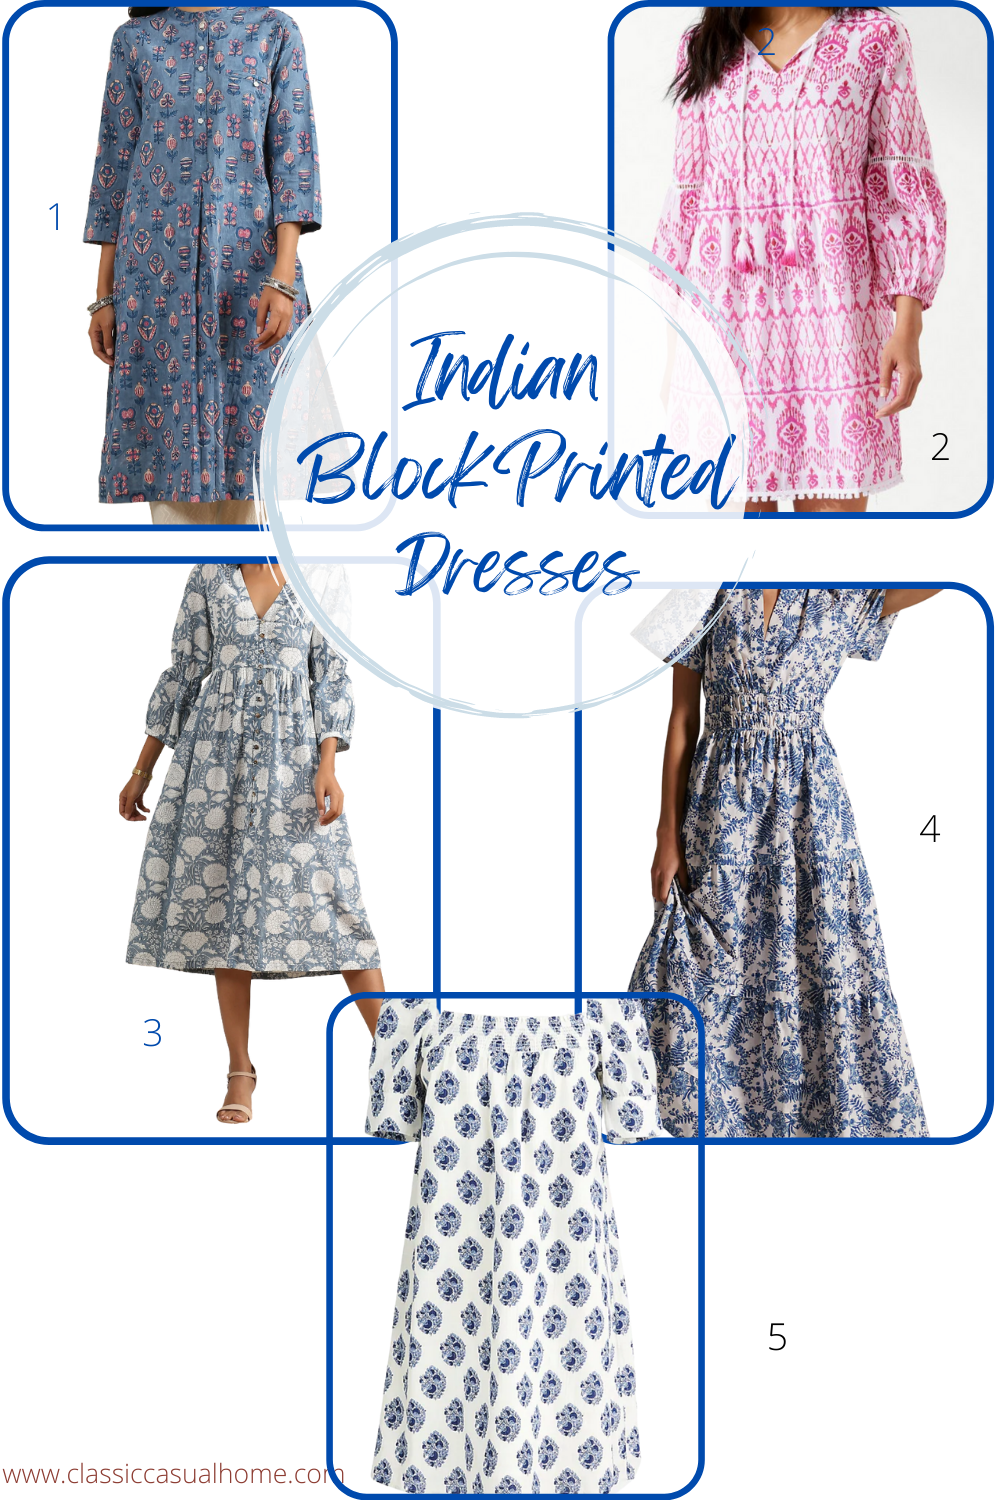 Indian Block printed colorful dresses